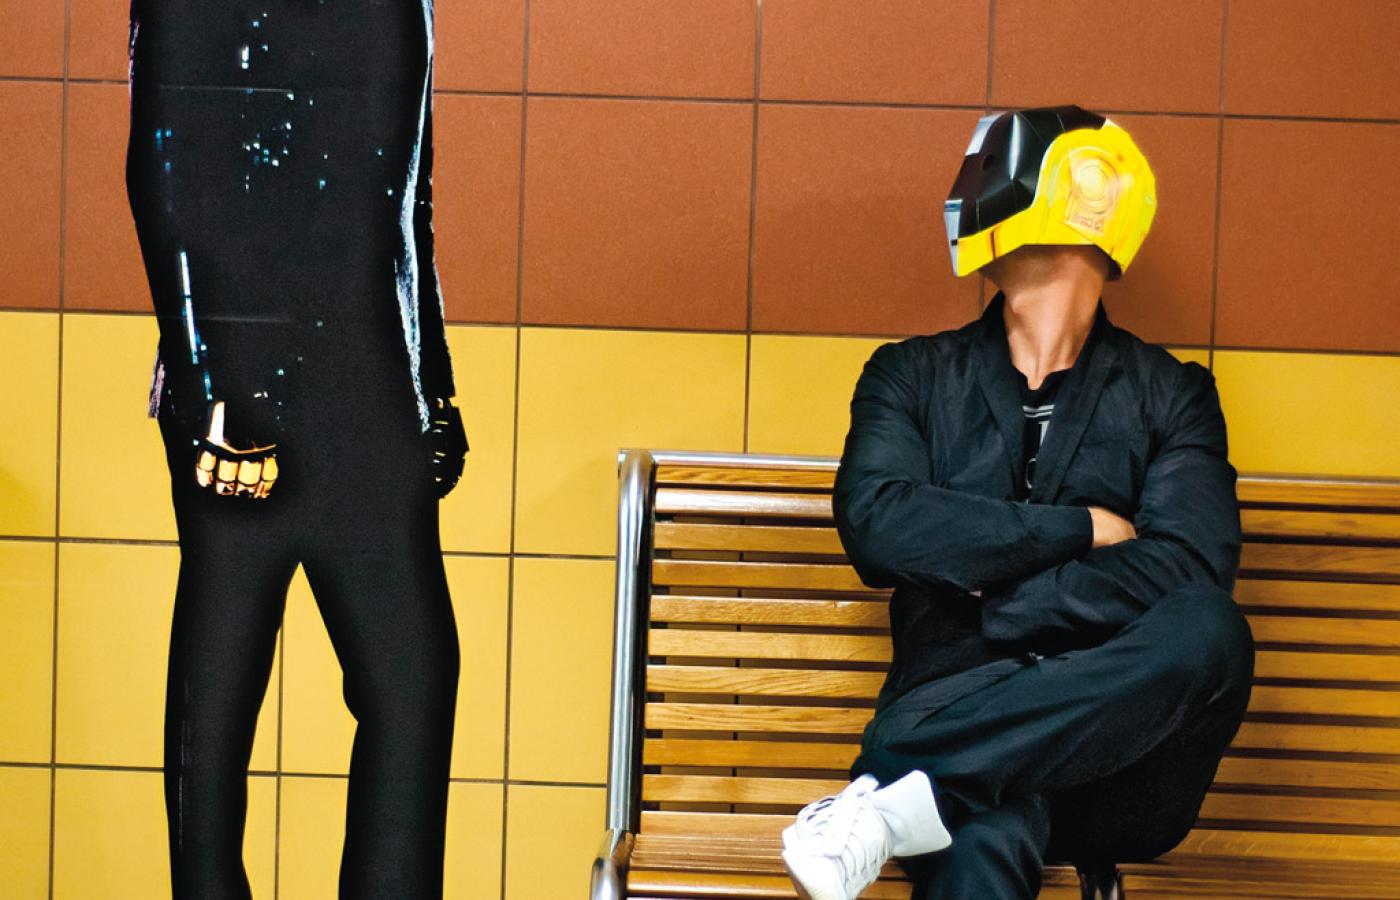 Tajemnicze postaci na stacji warszawskiego metra - tak promuje się najnowszy album Daft Punk.